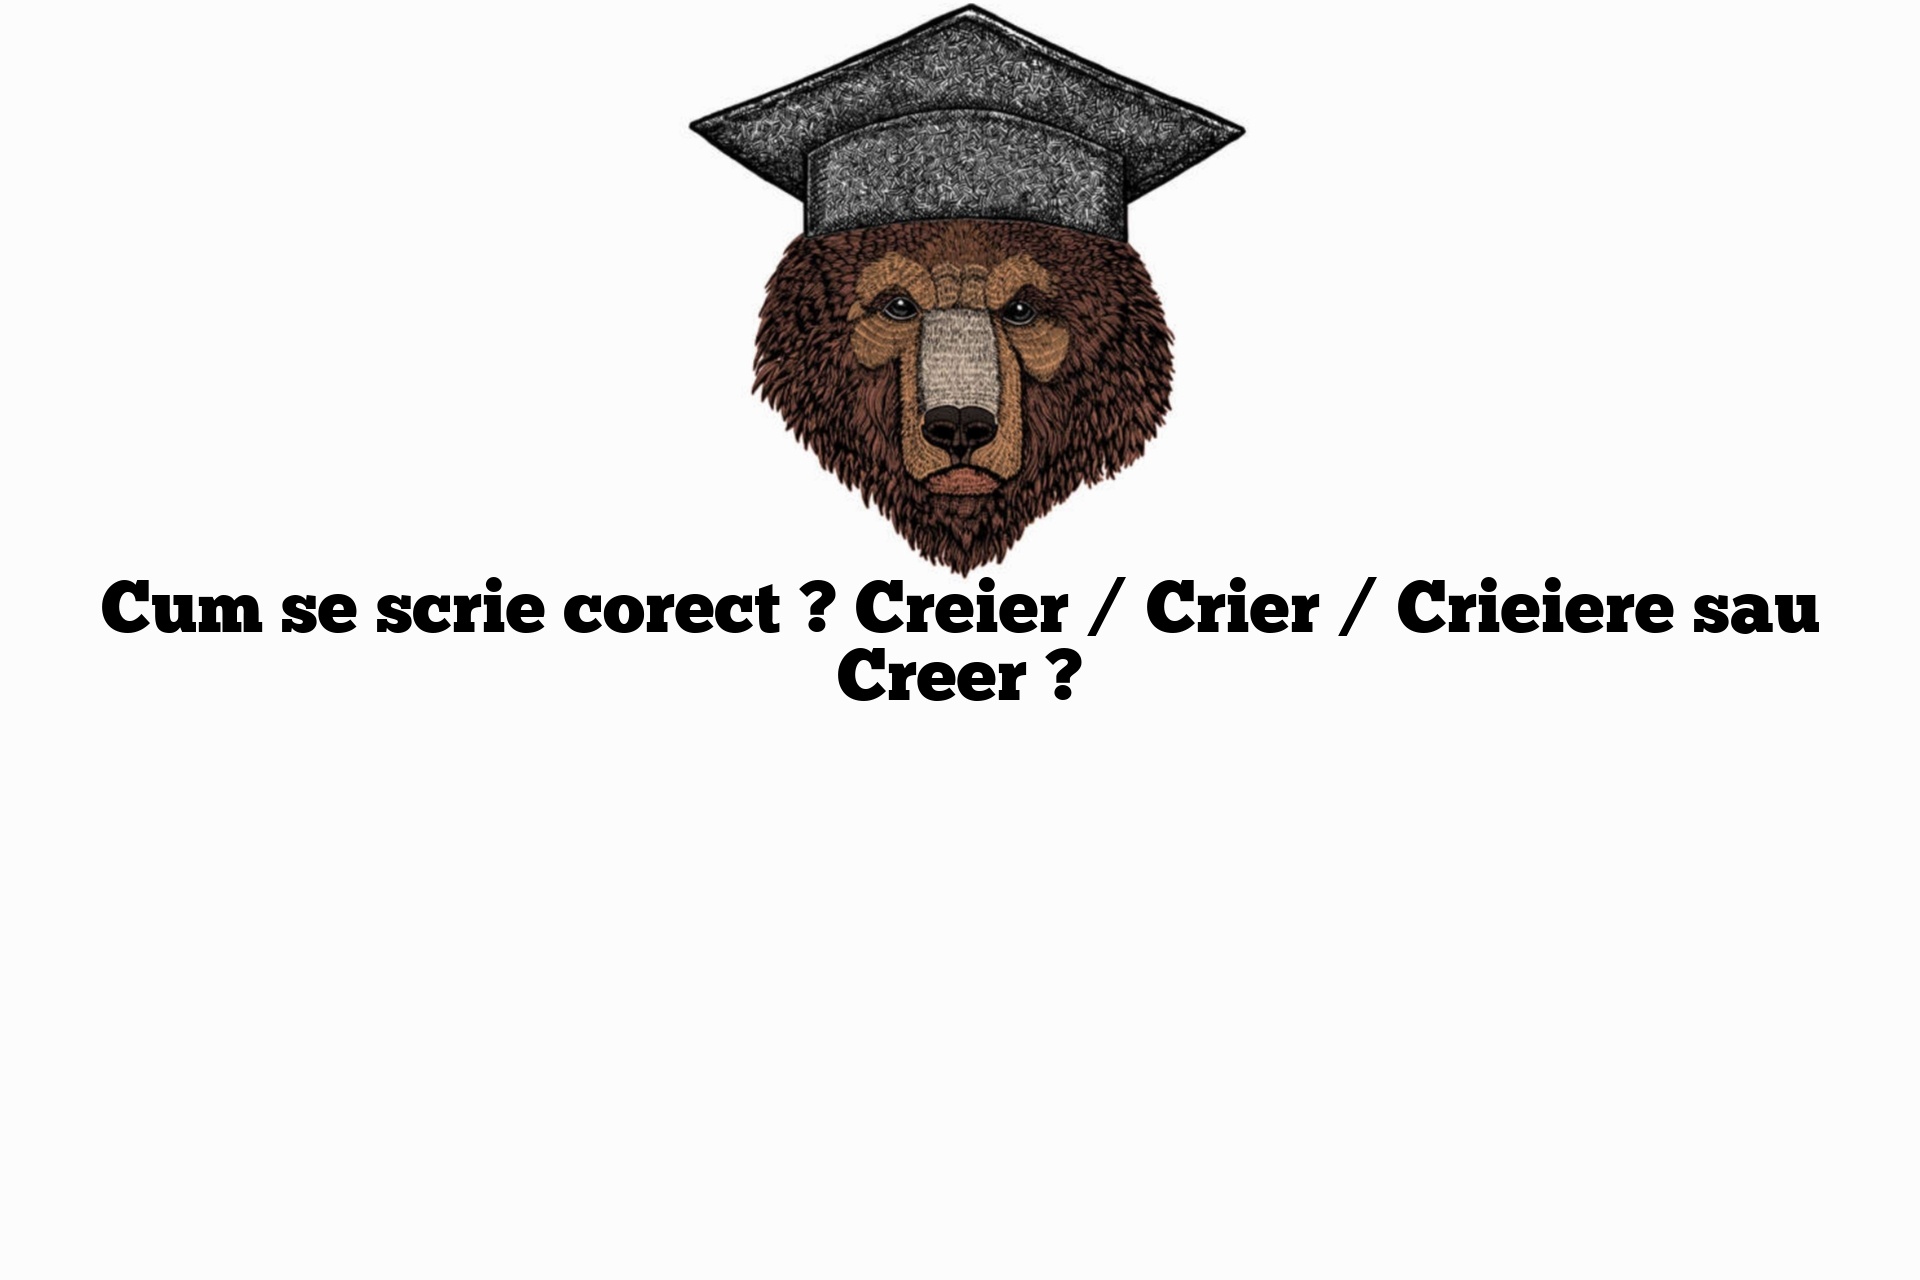 Cum se scrie corect ? Creier / Crier / Crieiere sau Creer ?